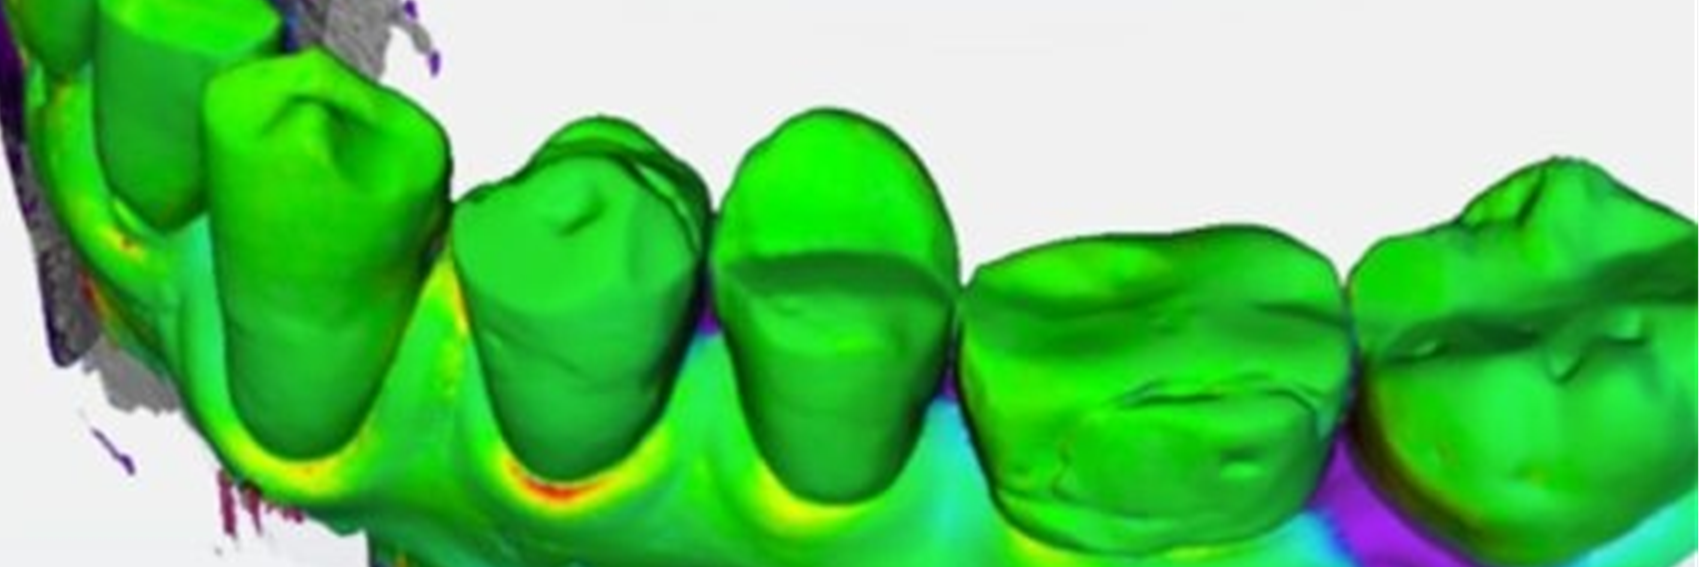 Falschfarbendarstellung einer Zahnreihe im Unterkiefer, Hinweis auf das duale Studiengangsmodell Bachelor OBV mit dem Partner Dentsply Sirona